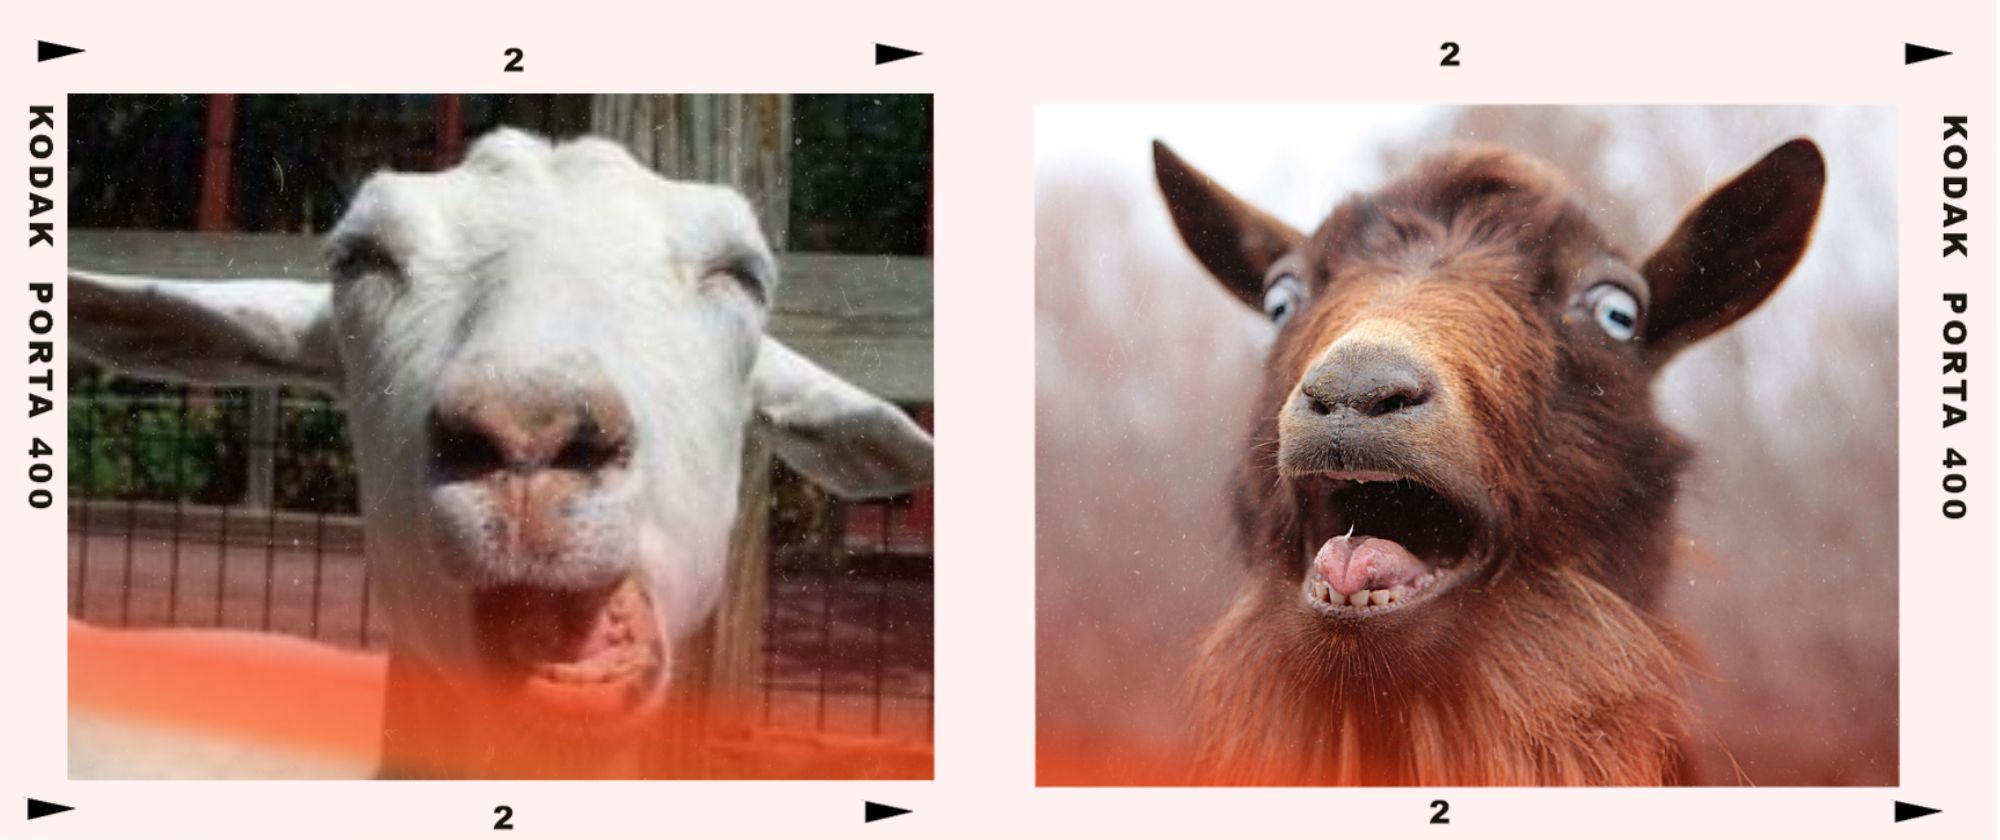 Sneezing Goats